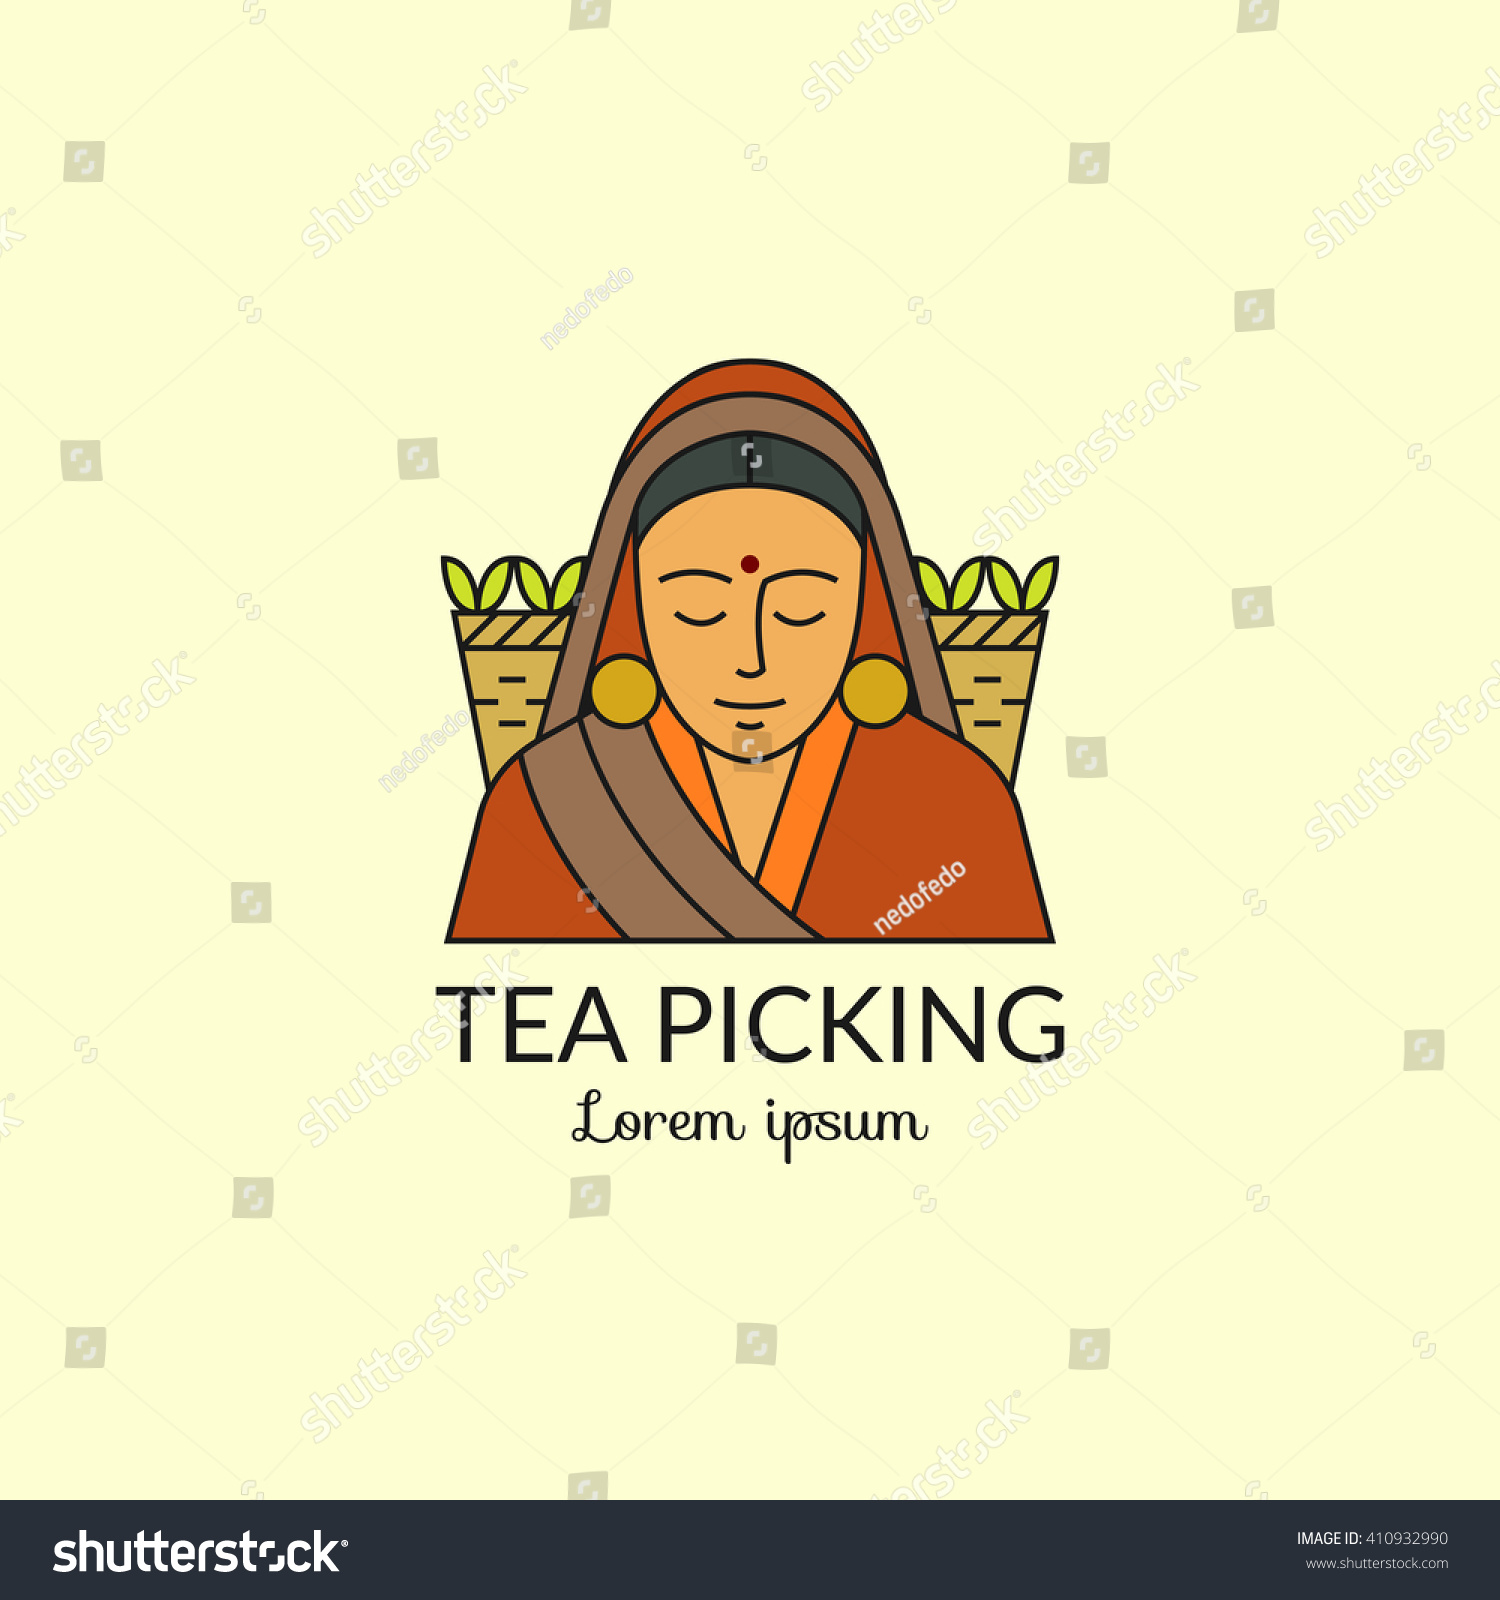 茶摘みのロゴ 摘みたての茶葉がいっぱい入った籐籠を持つインドの女性 ベクター画像のカラフルイラスト 単純な線形設計 のベクター画像素材 ロイヤリティフリー